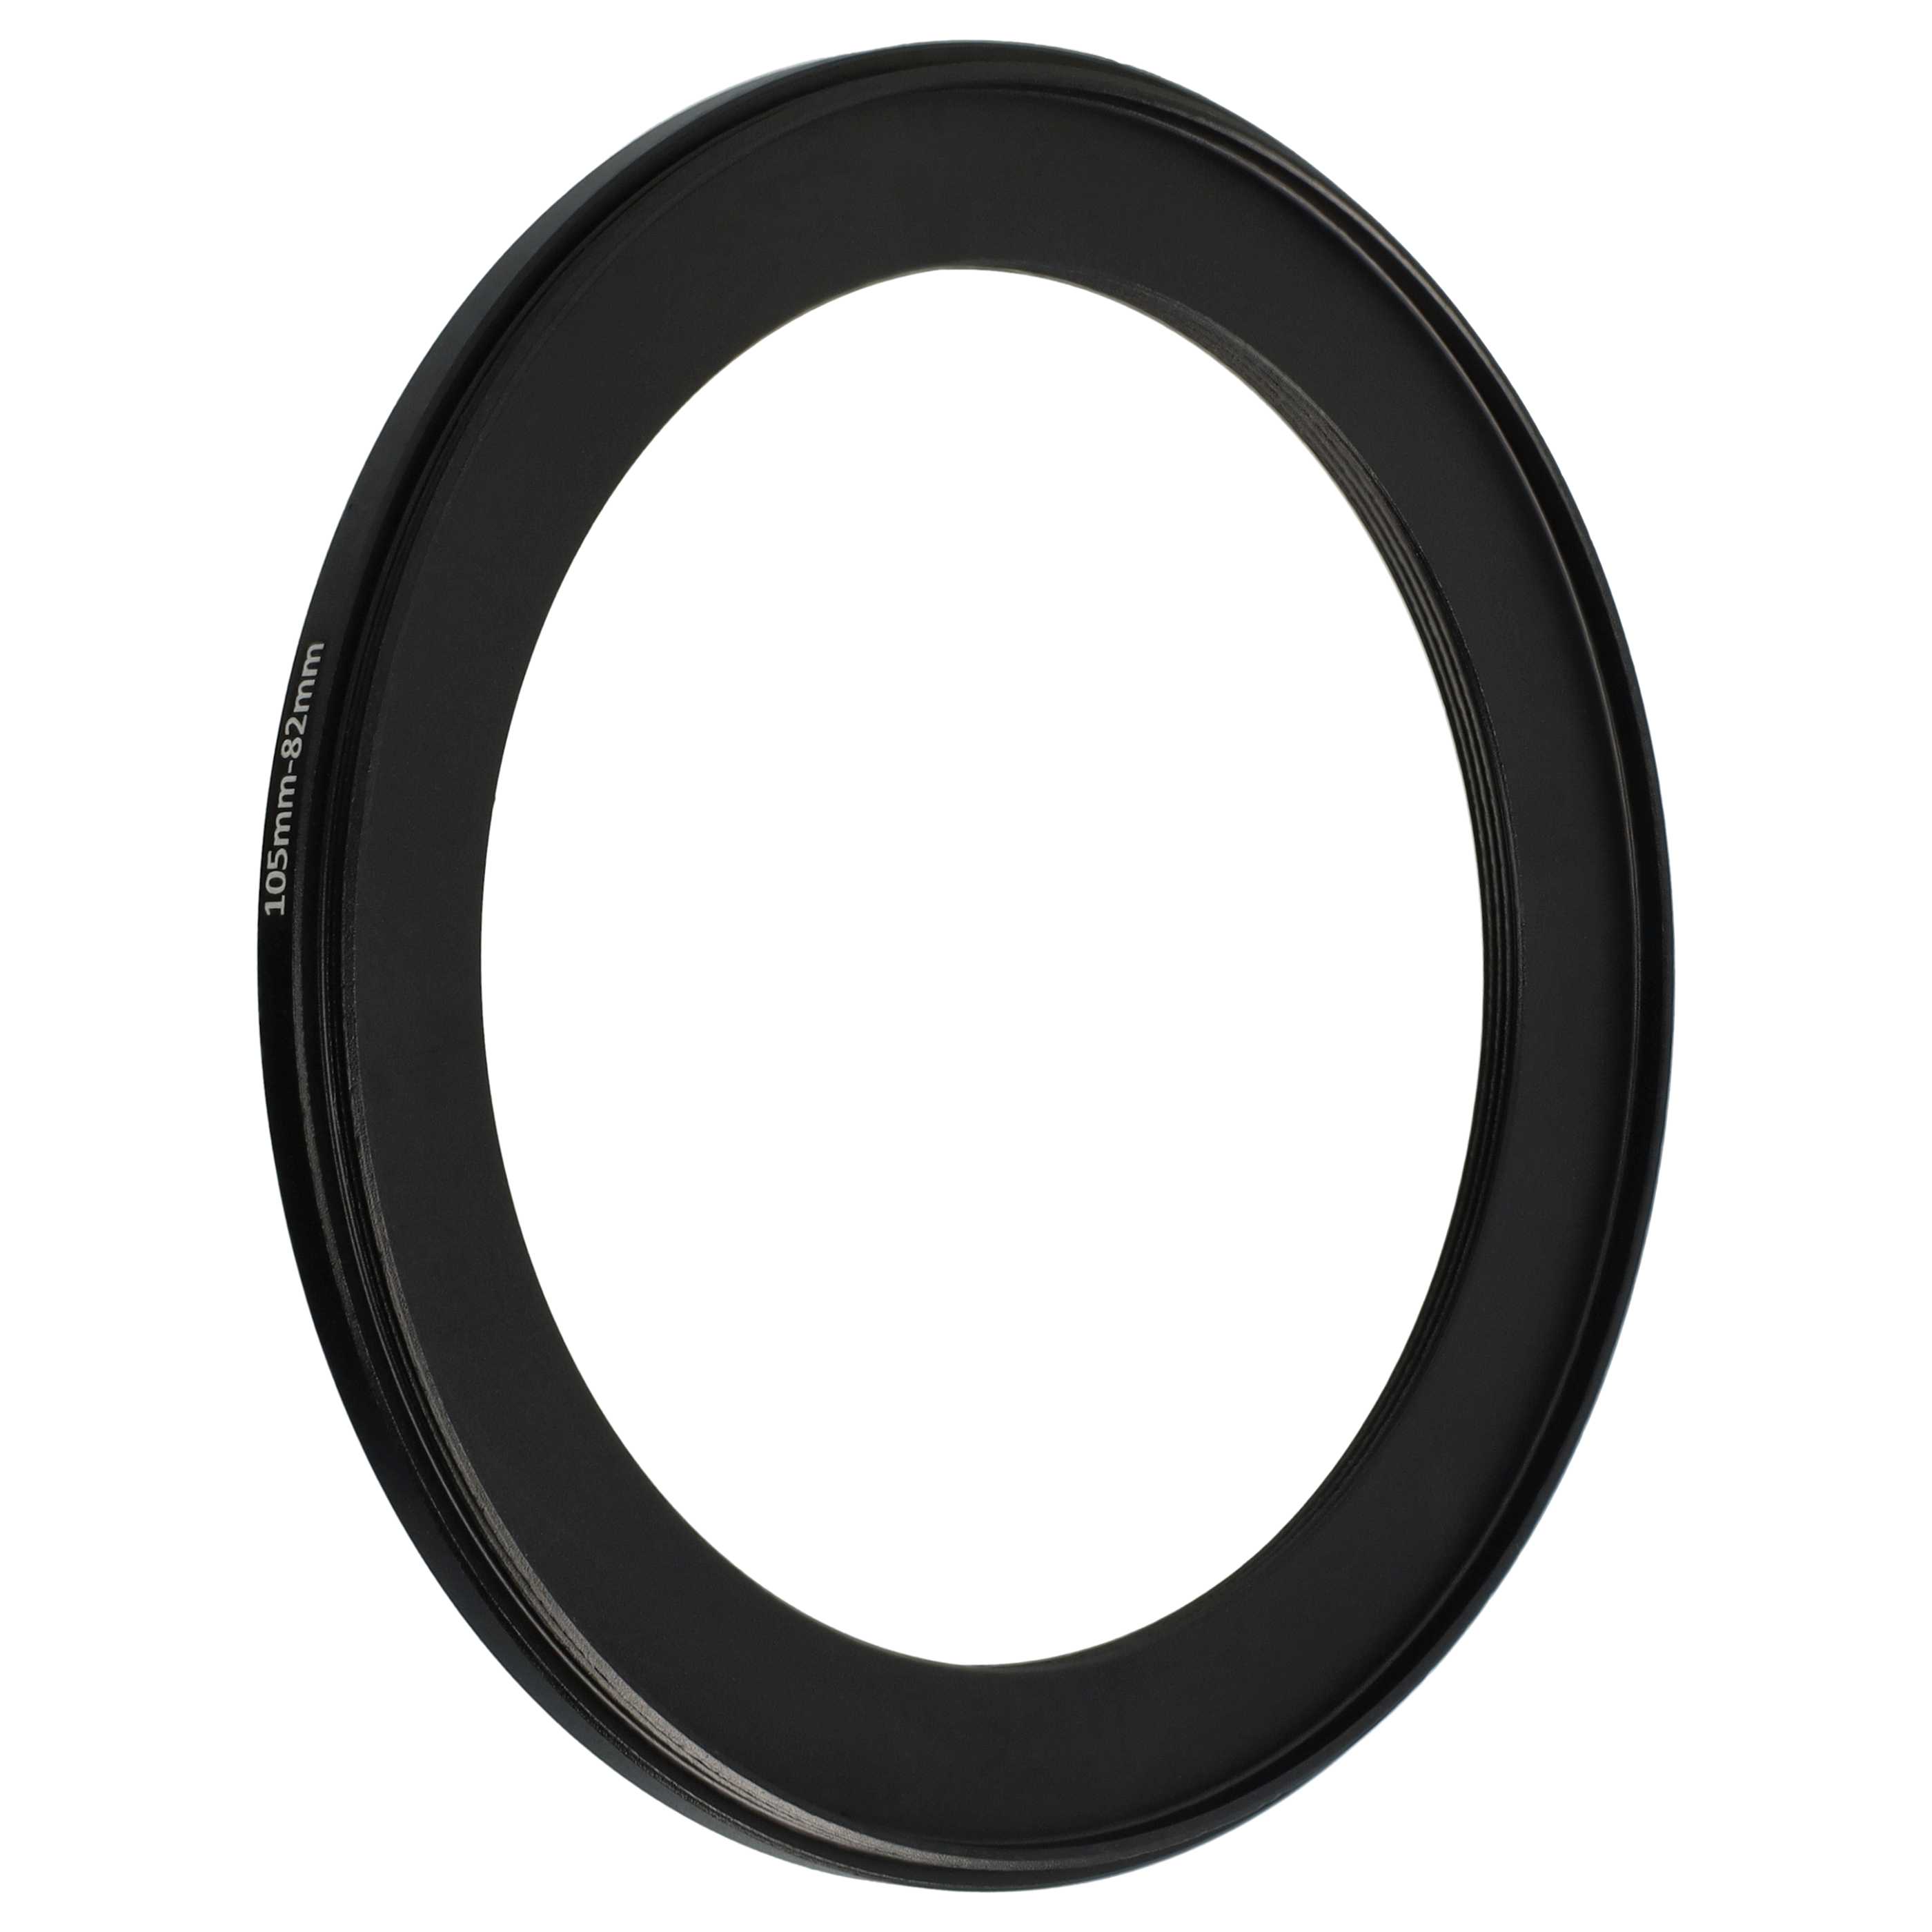 Redukcja filtrowa adapter Step-Down 105 mm - 82 mm pasująca do obiektywu - metal, czarny